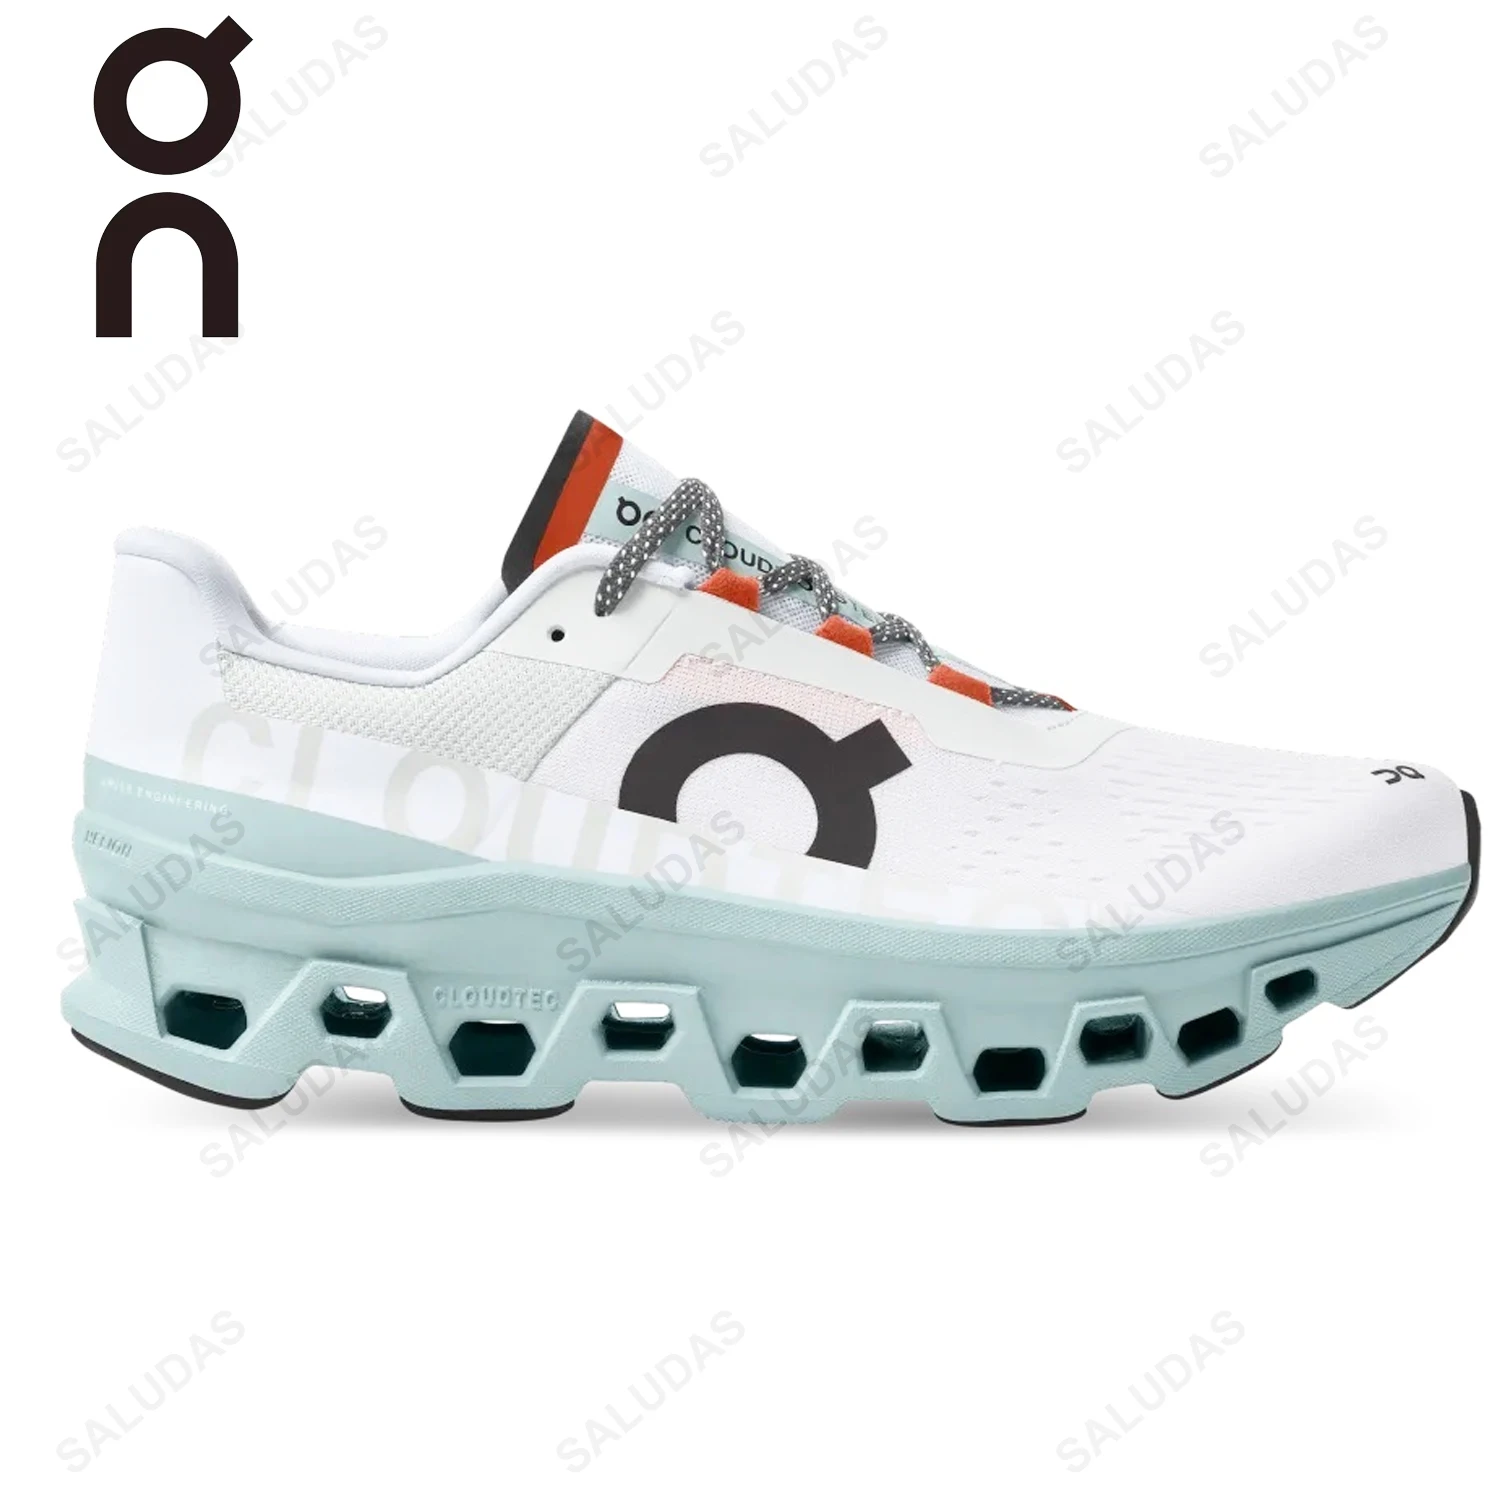 

Мужские кроссовки для бега ON Cloudmonster, противоударные ультралегкие дышащие кроссовки для бега на дороге, повседневная спортивная обувь для бега на открытом воздухе для мужчин